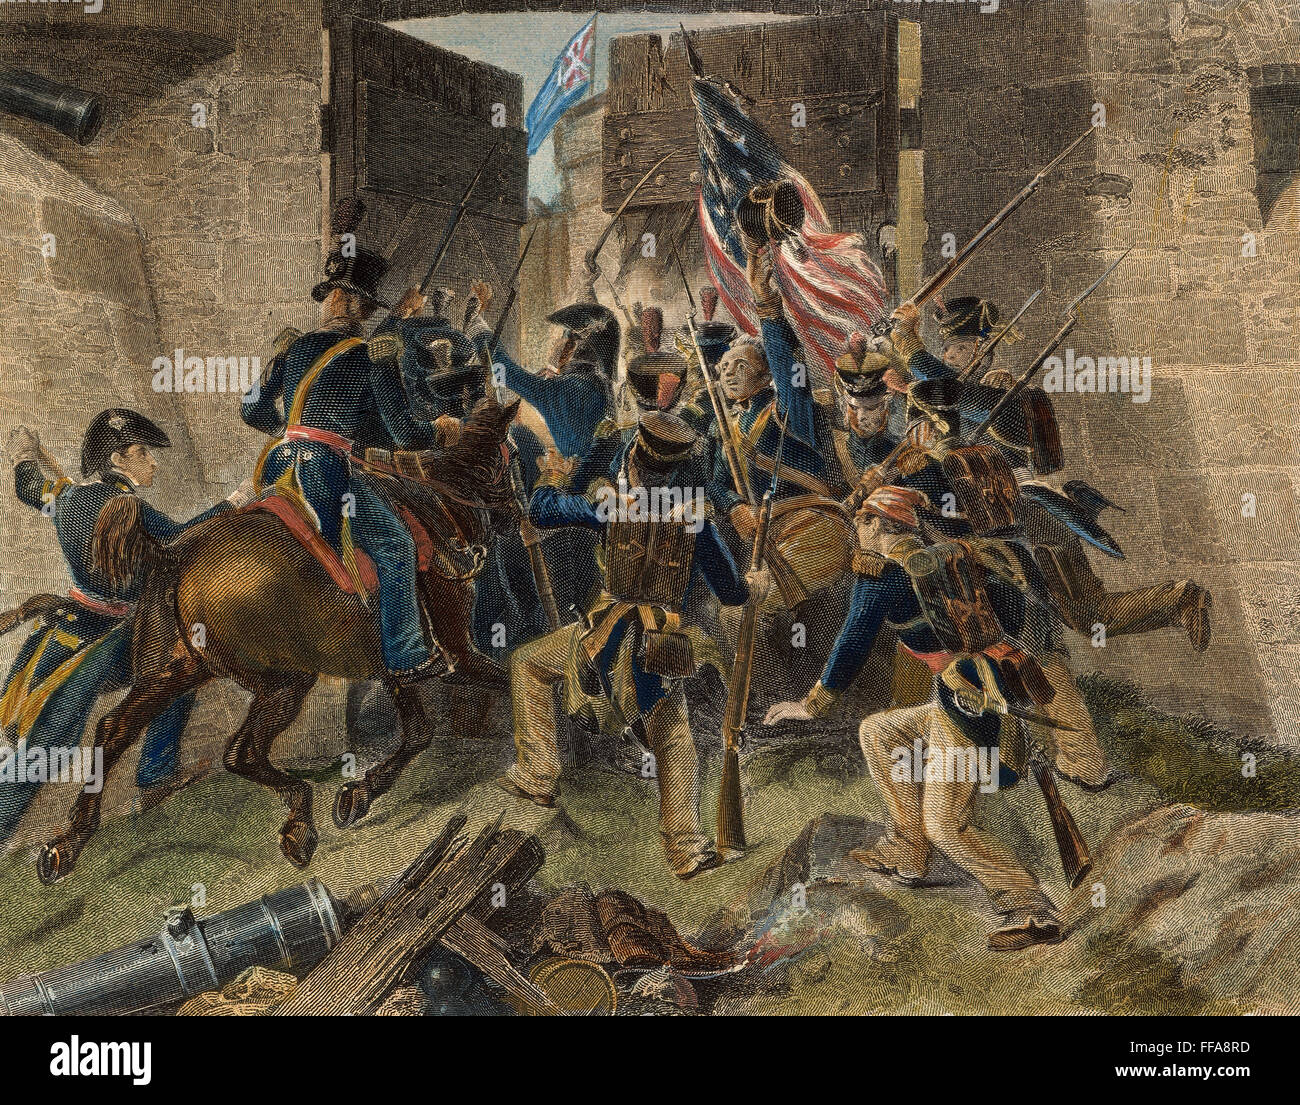 Le FORT GEORGE, 1813. /À VIDE. Le colonel Winfield Scott menant l'attaque à la prise du fort George, sur la rive canadienne de la rivière Niagara, 27 mai 1813 : gravure couleur, 19e siècle. Banque D'Images